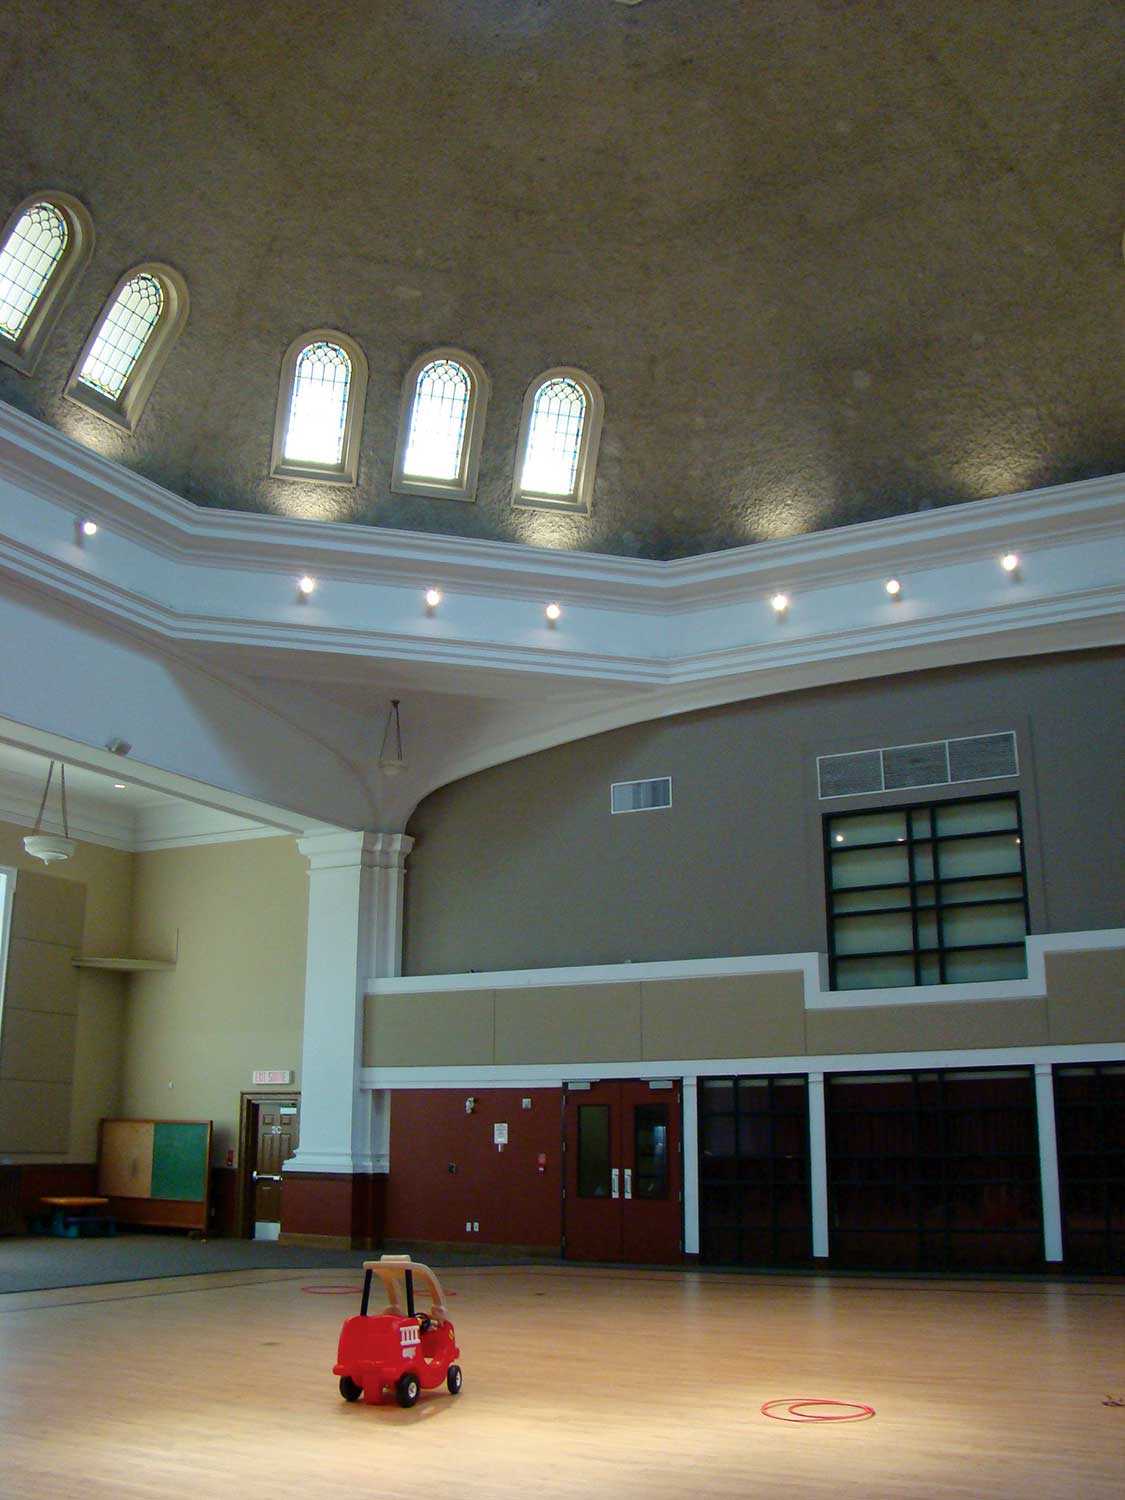 Gymnasium, Glebe Community Centre, Ottawa